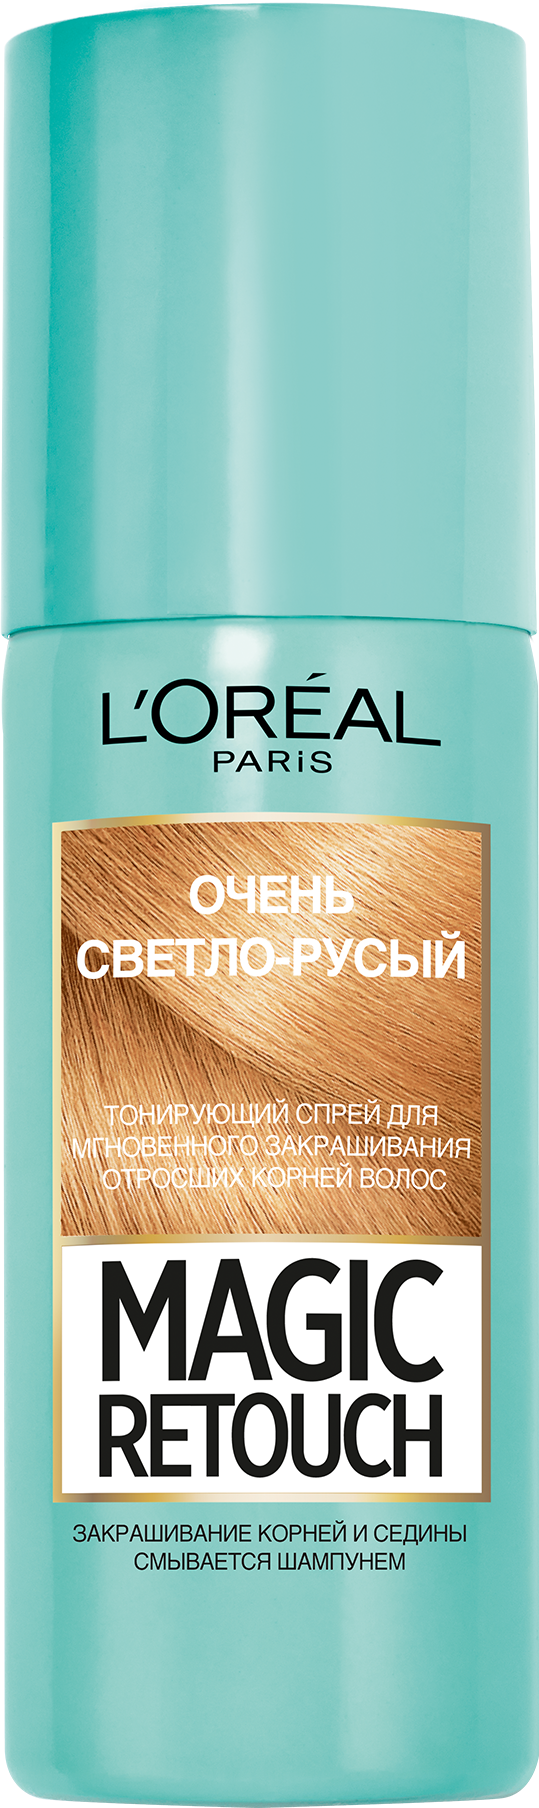 Тонирующий спрей для волос L'Oreal Paris Magic Retouch, тон 09 (очень светло-русый), 75 мл - фото 1